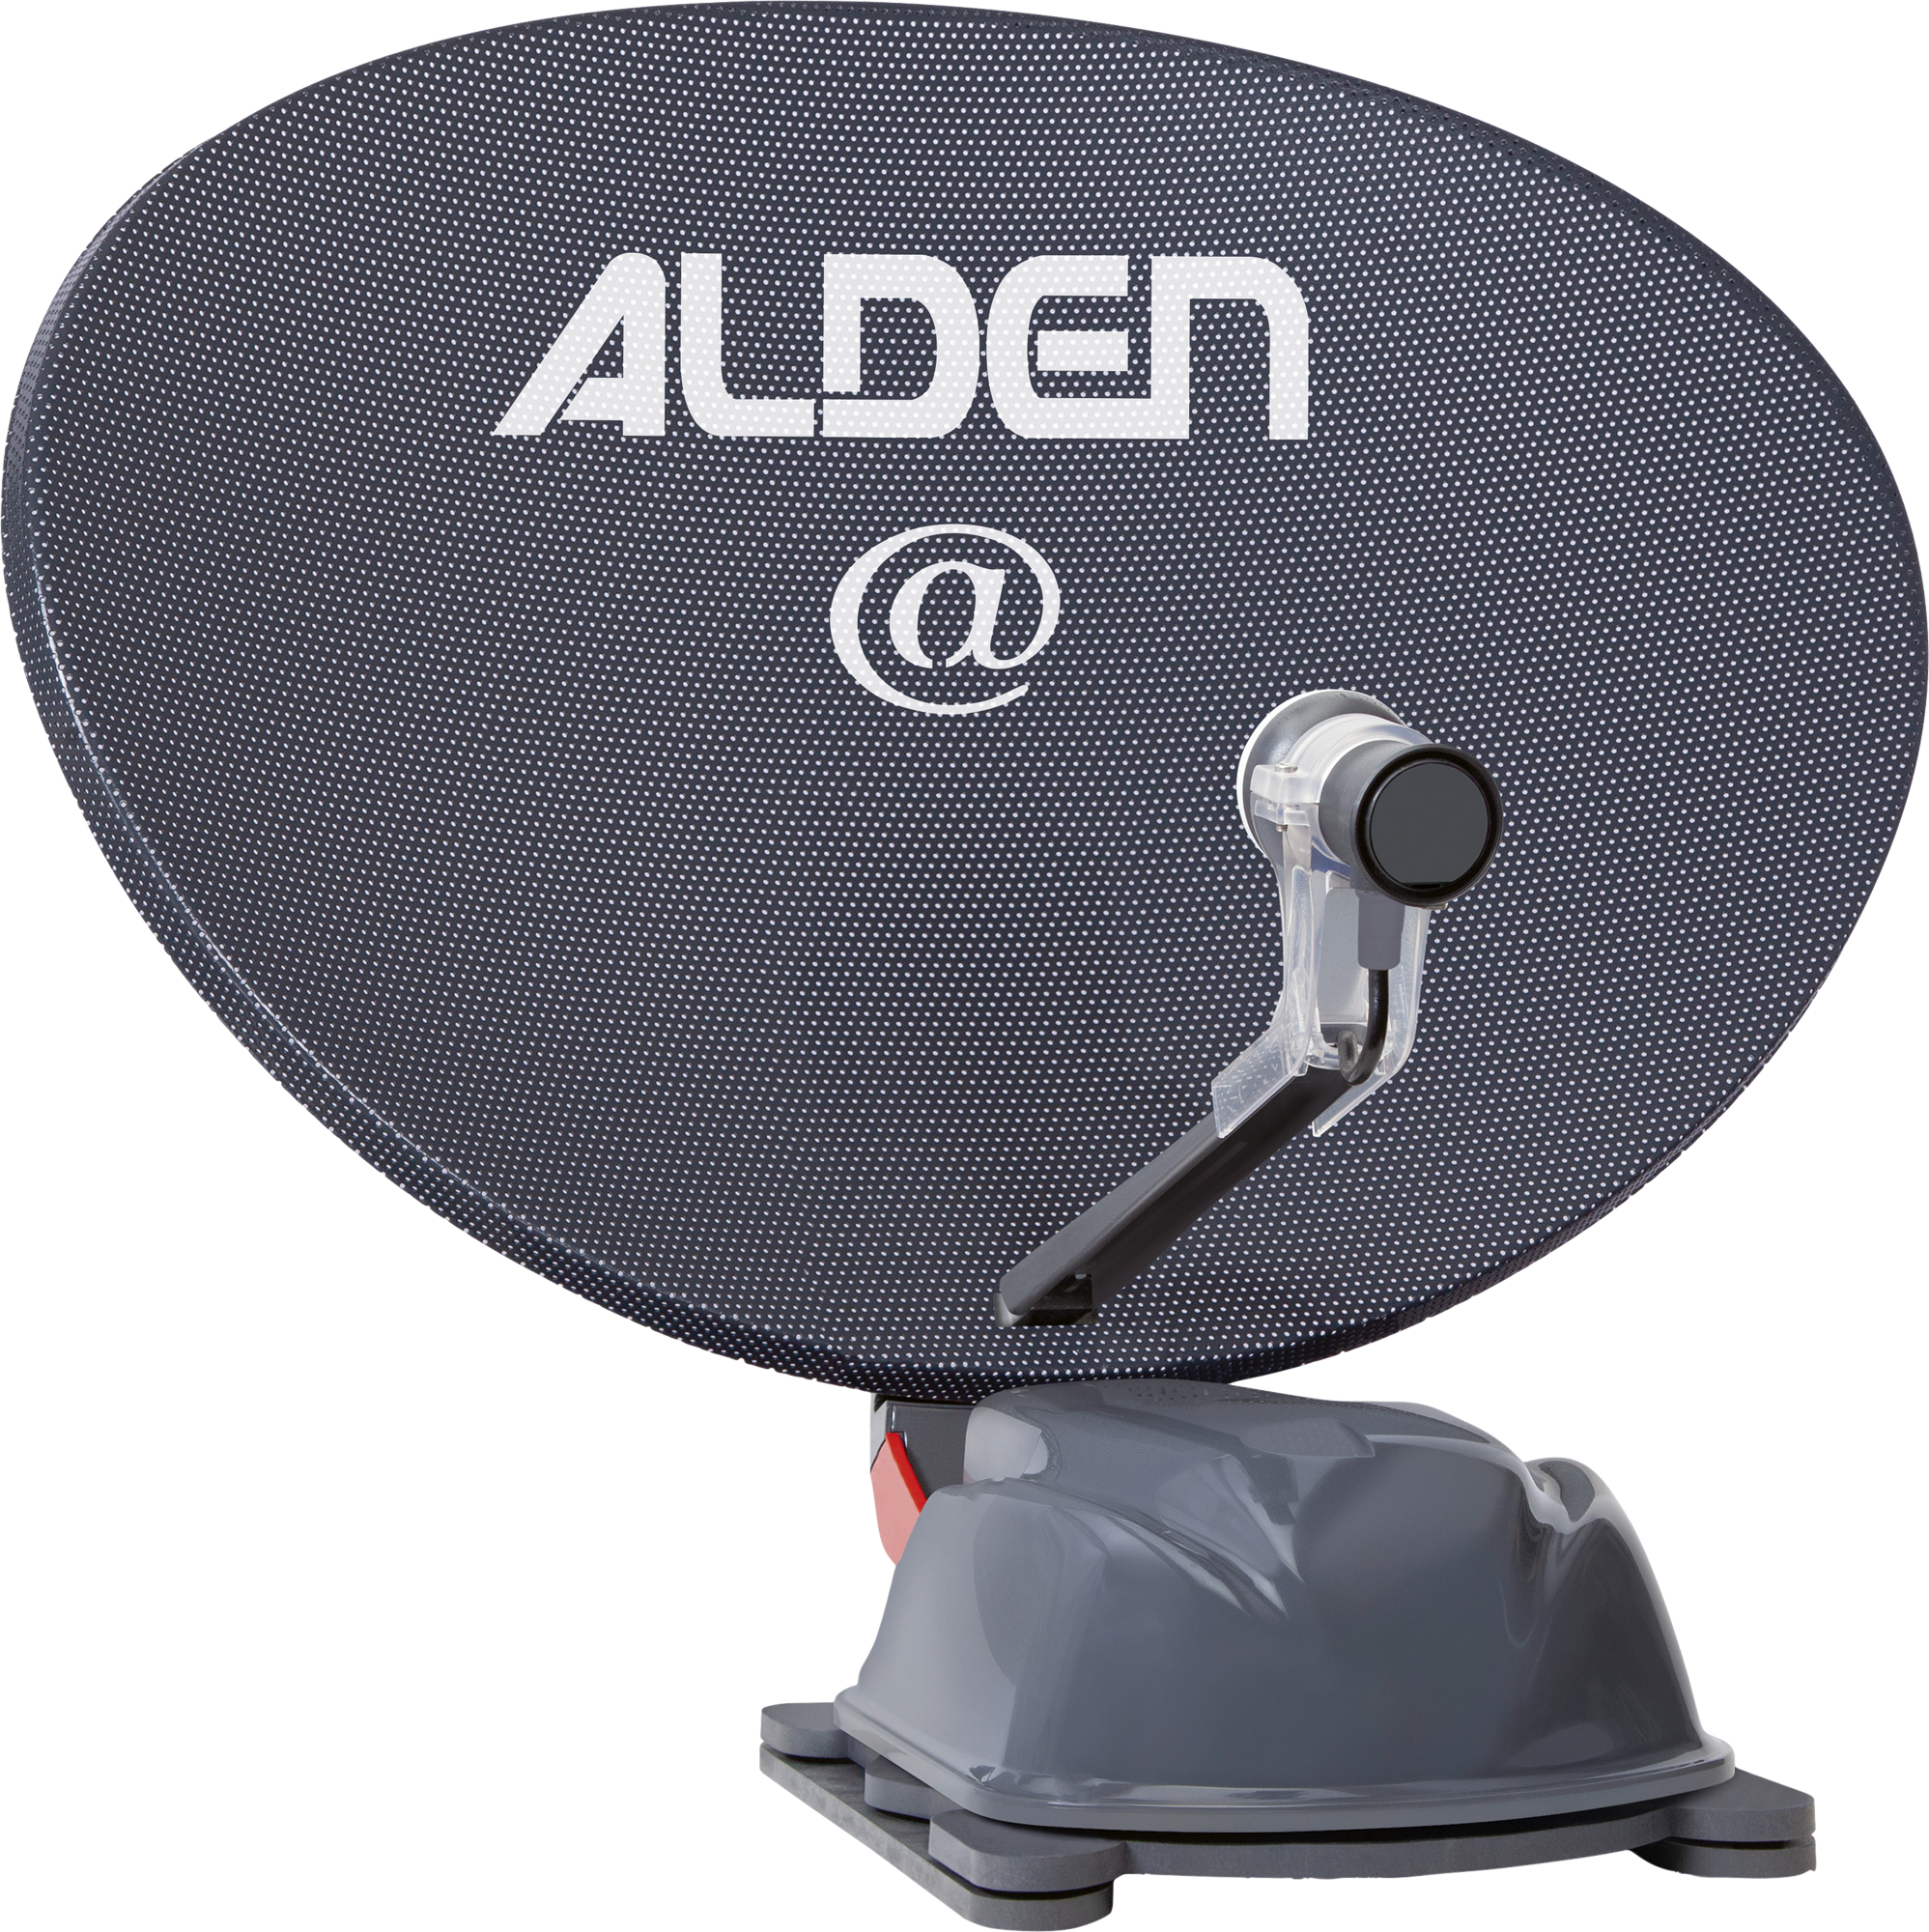 Alden AS2@ 80 HD Platinium vollautomatische Satellitenanlage inklusive S.S.C. HD Steuermodul / LTE Antenne / Smartwide LED TV 19 Zoll